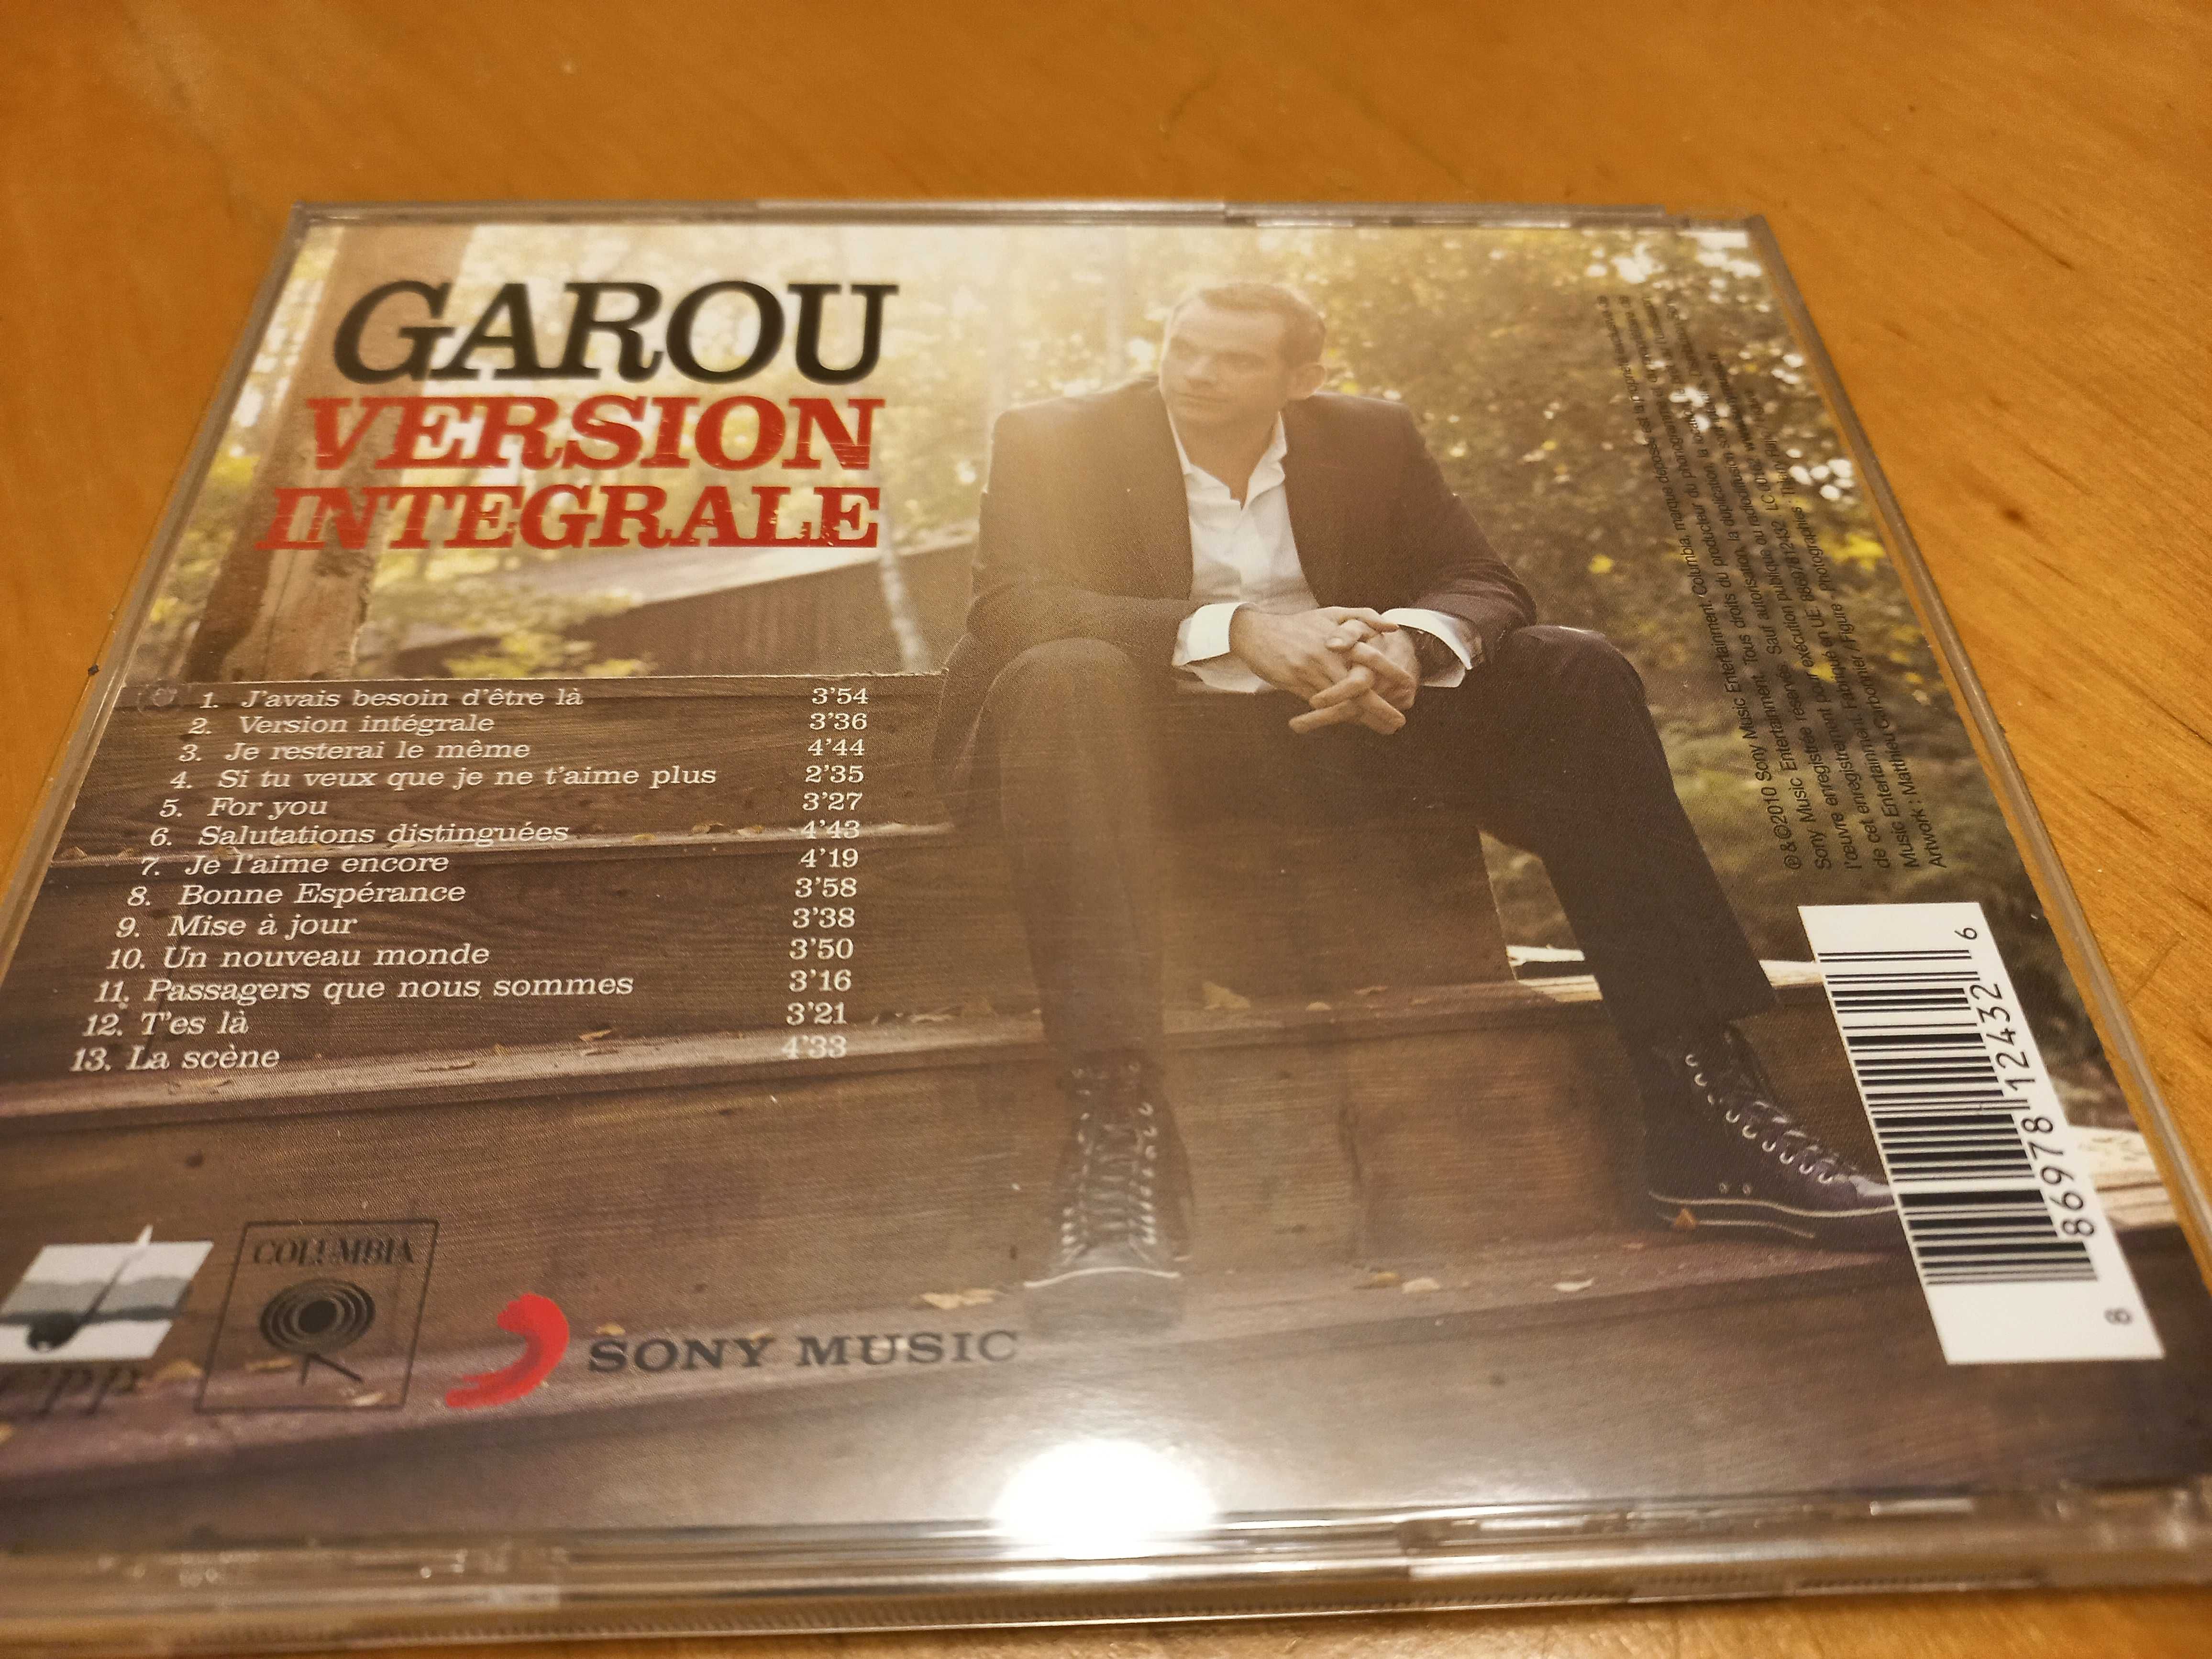 !! druga płyta CD za 5 zł !! - Garou, "Version integrale"